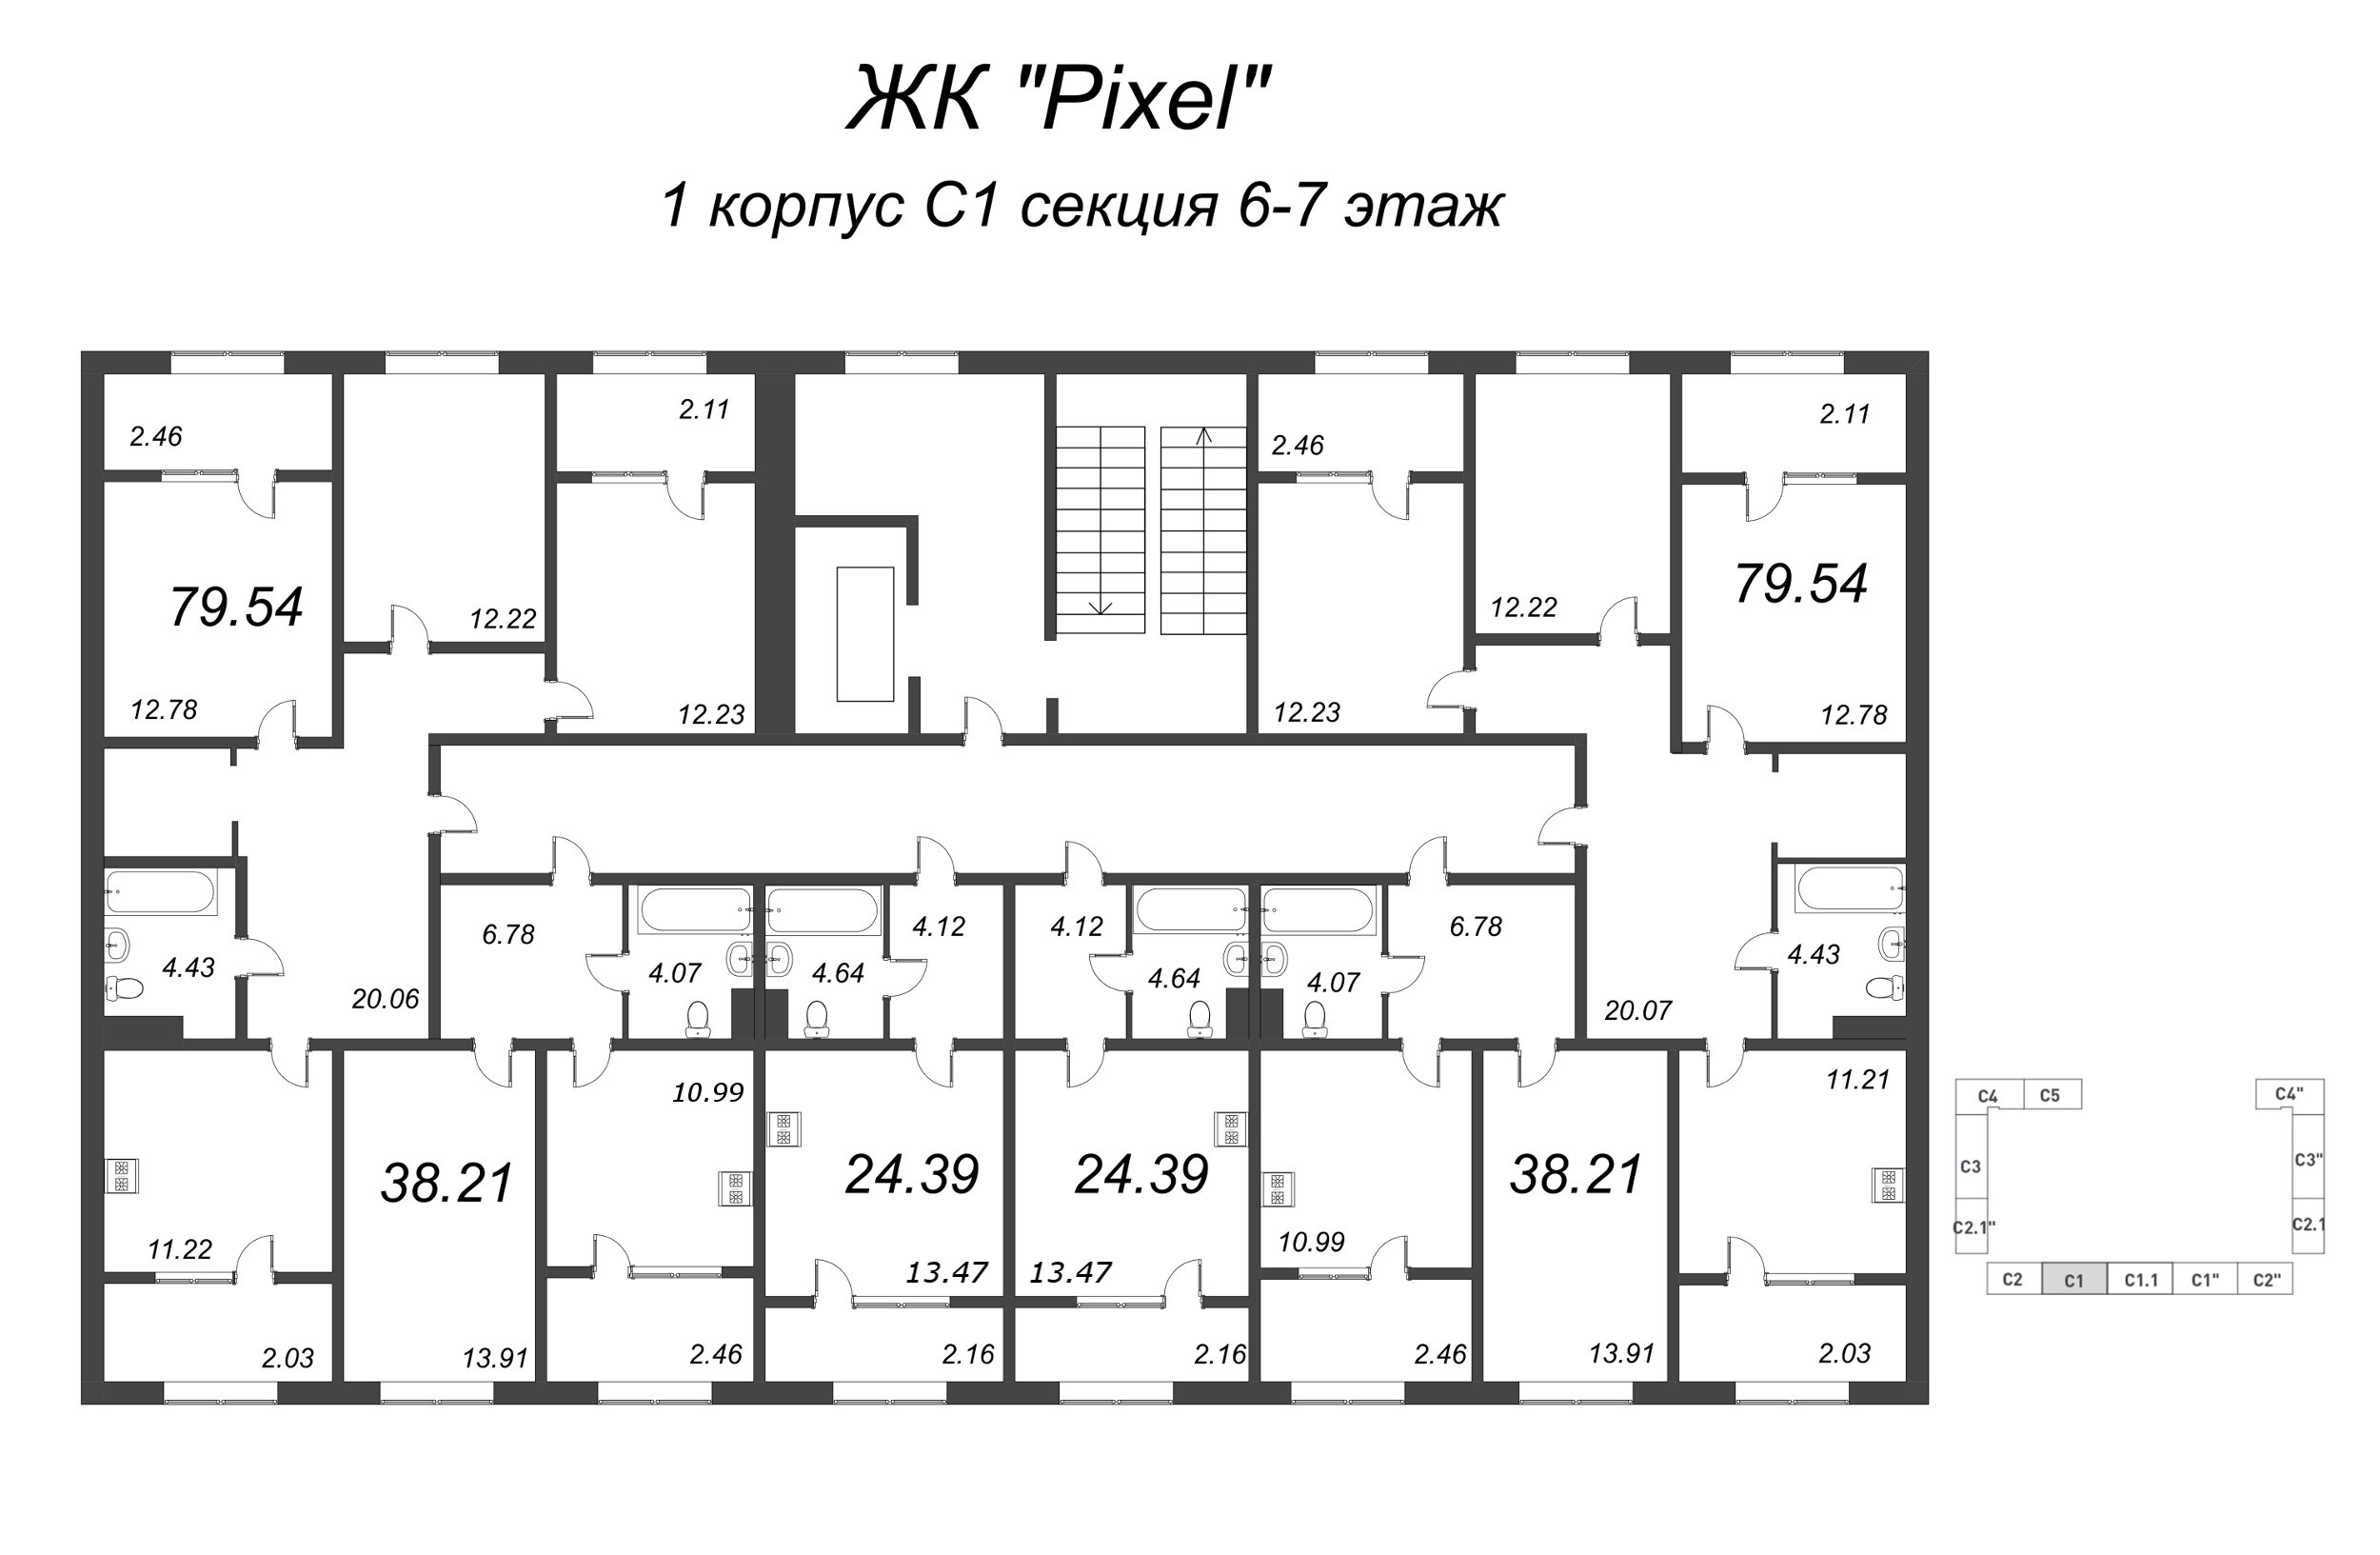 Квартира-студия, 25.95 м² в ЖК "Pixel" - планировка этажа